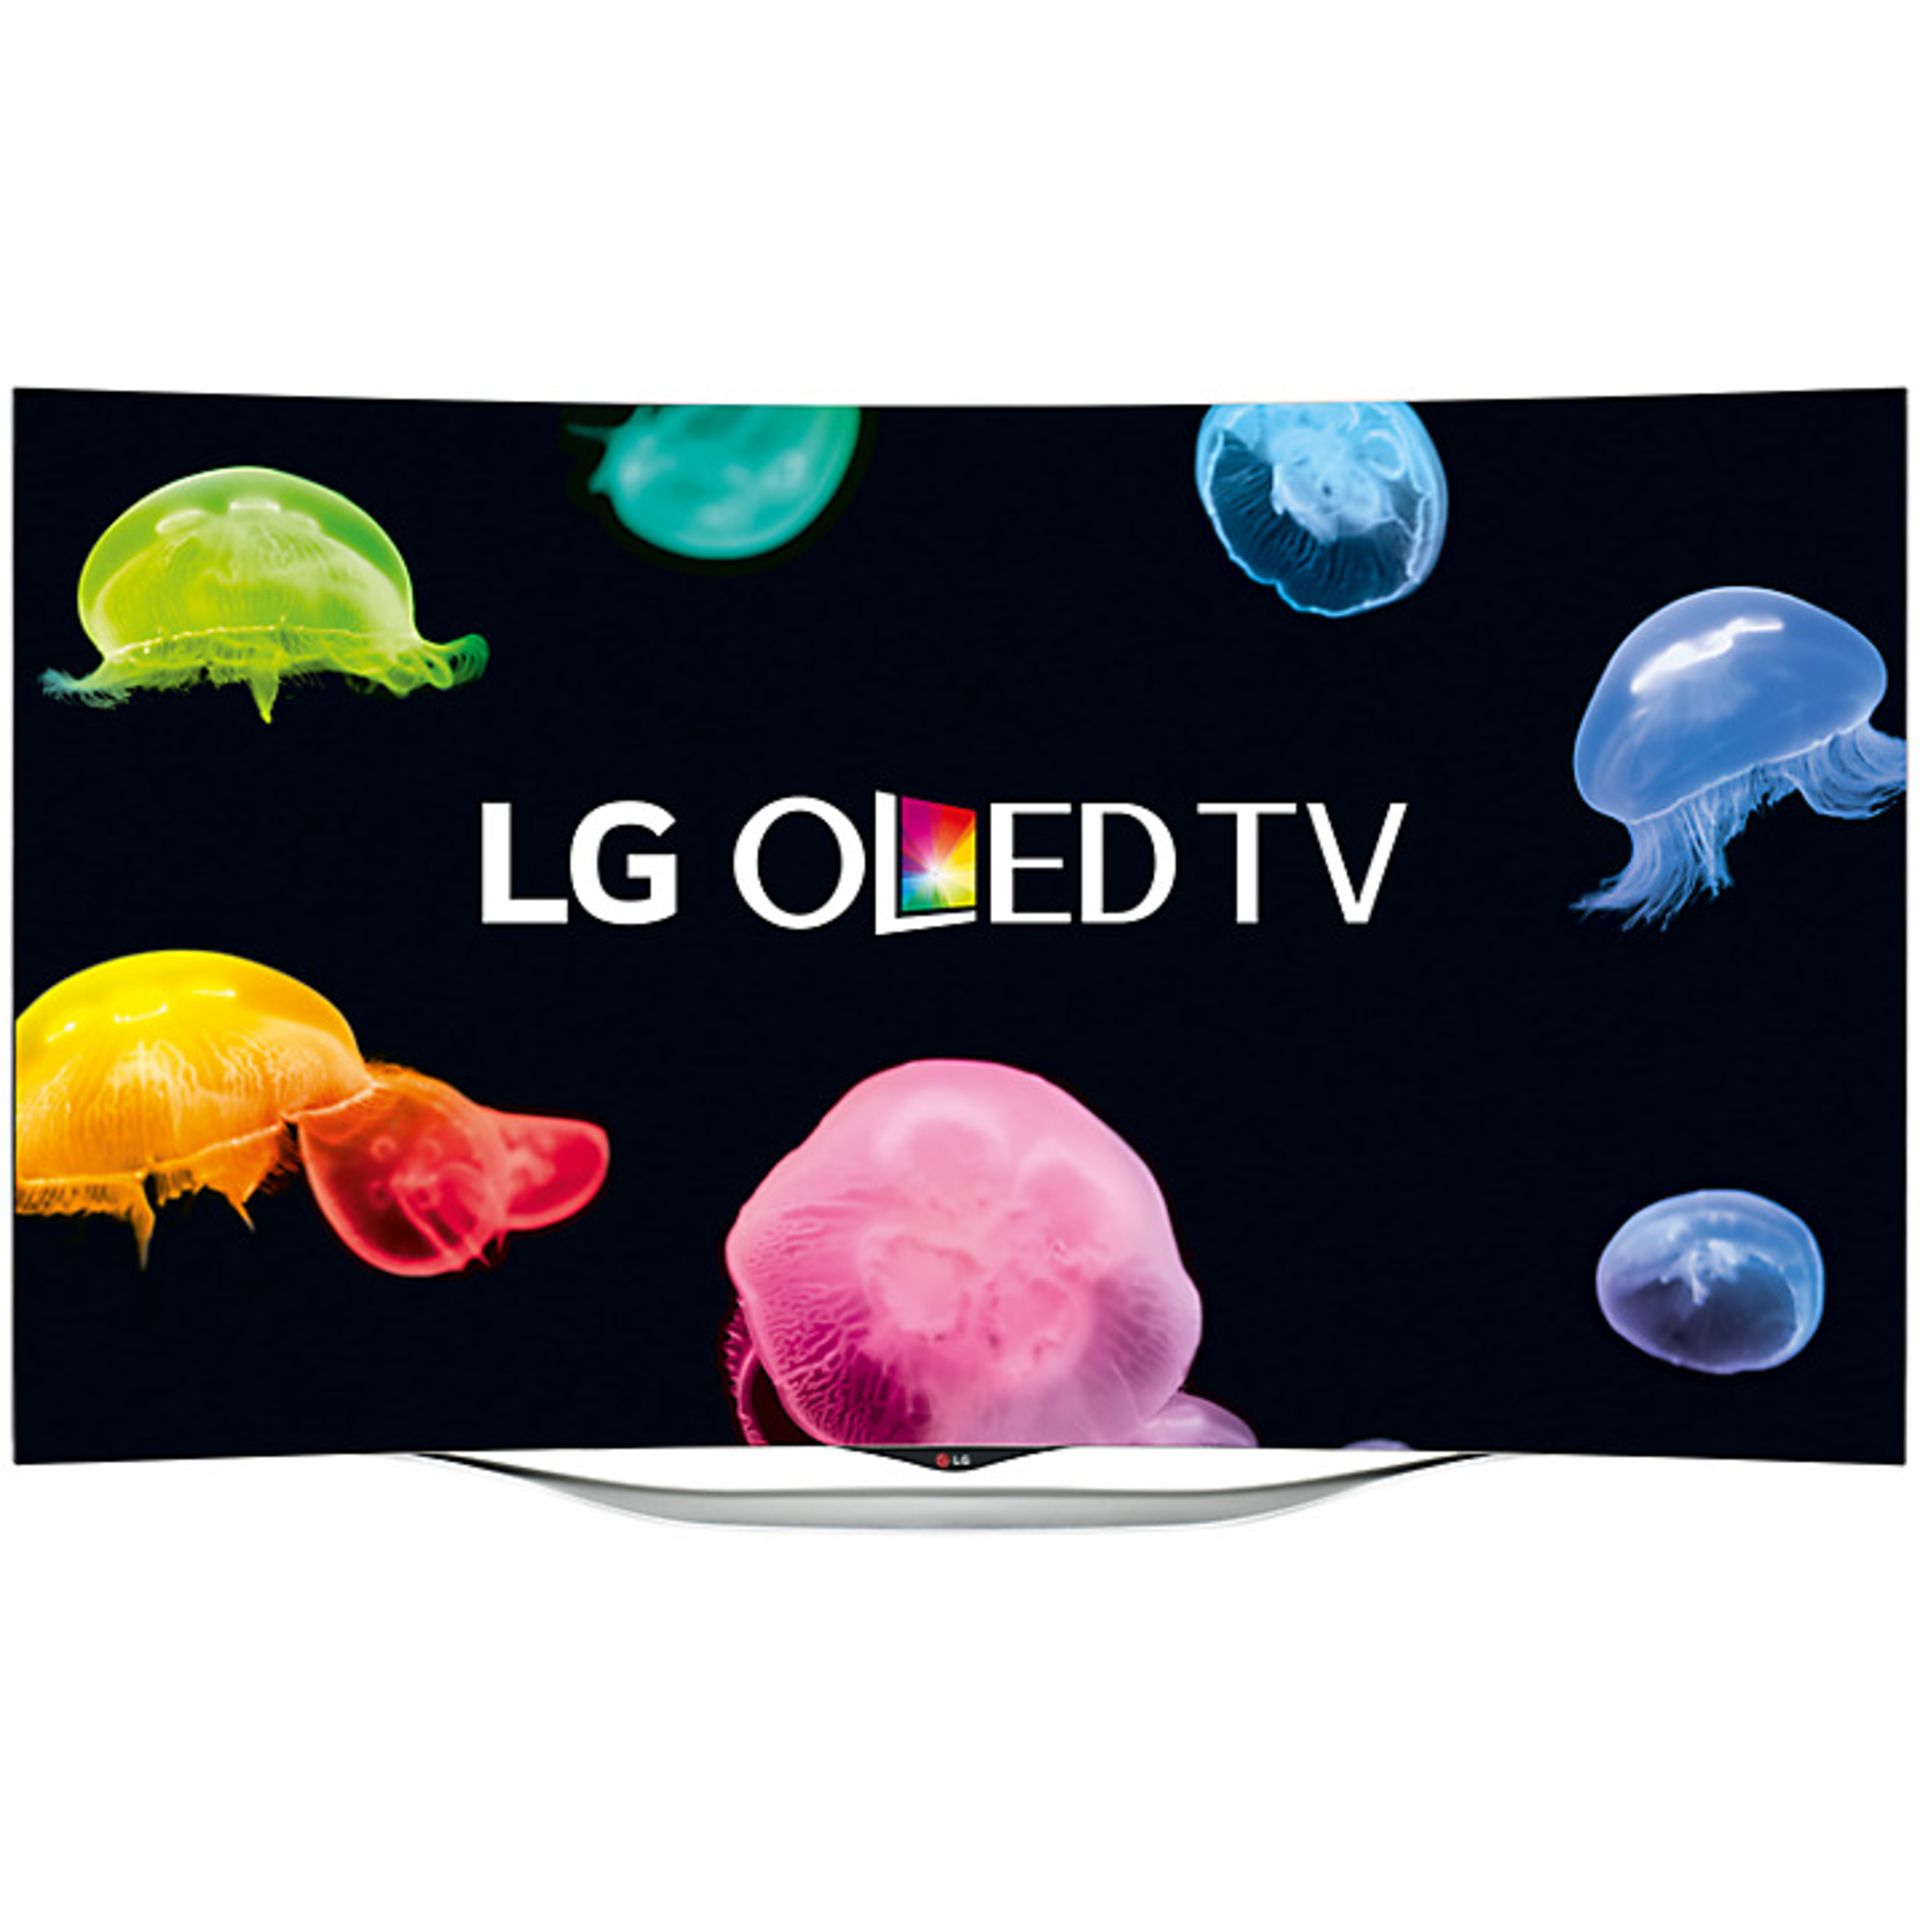 V Grade A 55EC930V 55" LG OLED Curved Smart 3D TV With Freeview HD - Ultra Slim Design - Smart Share